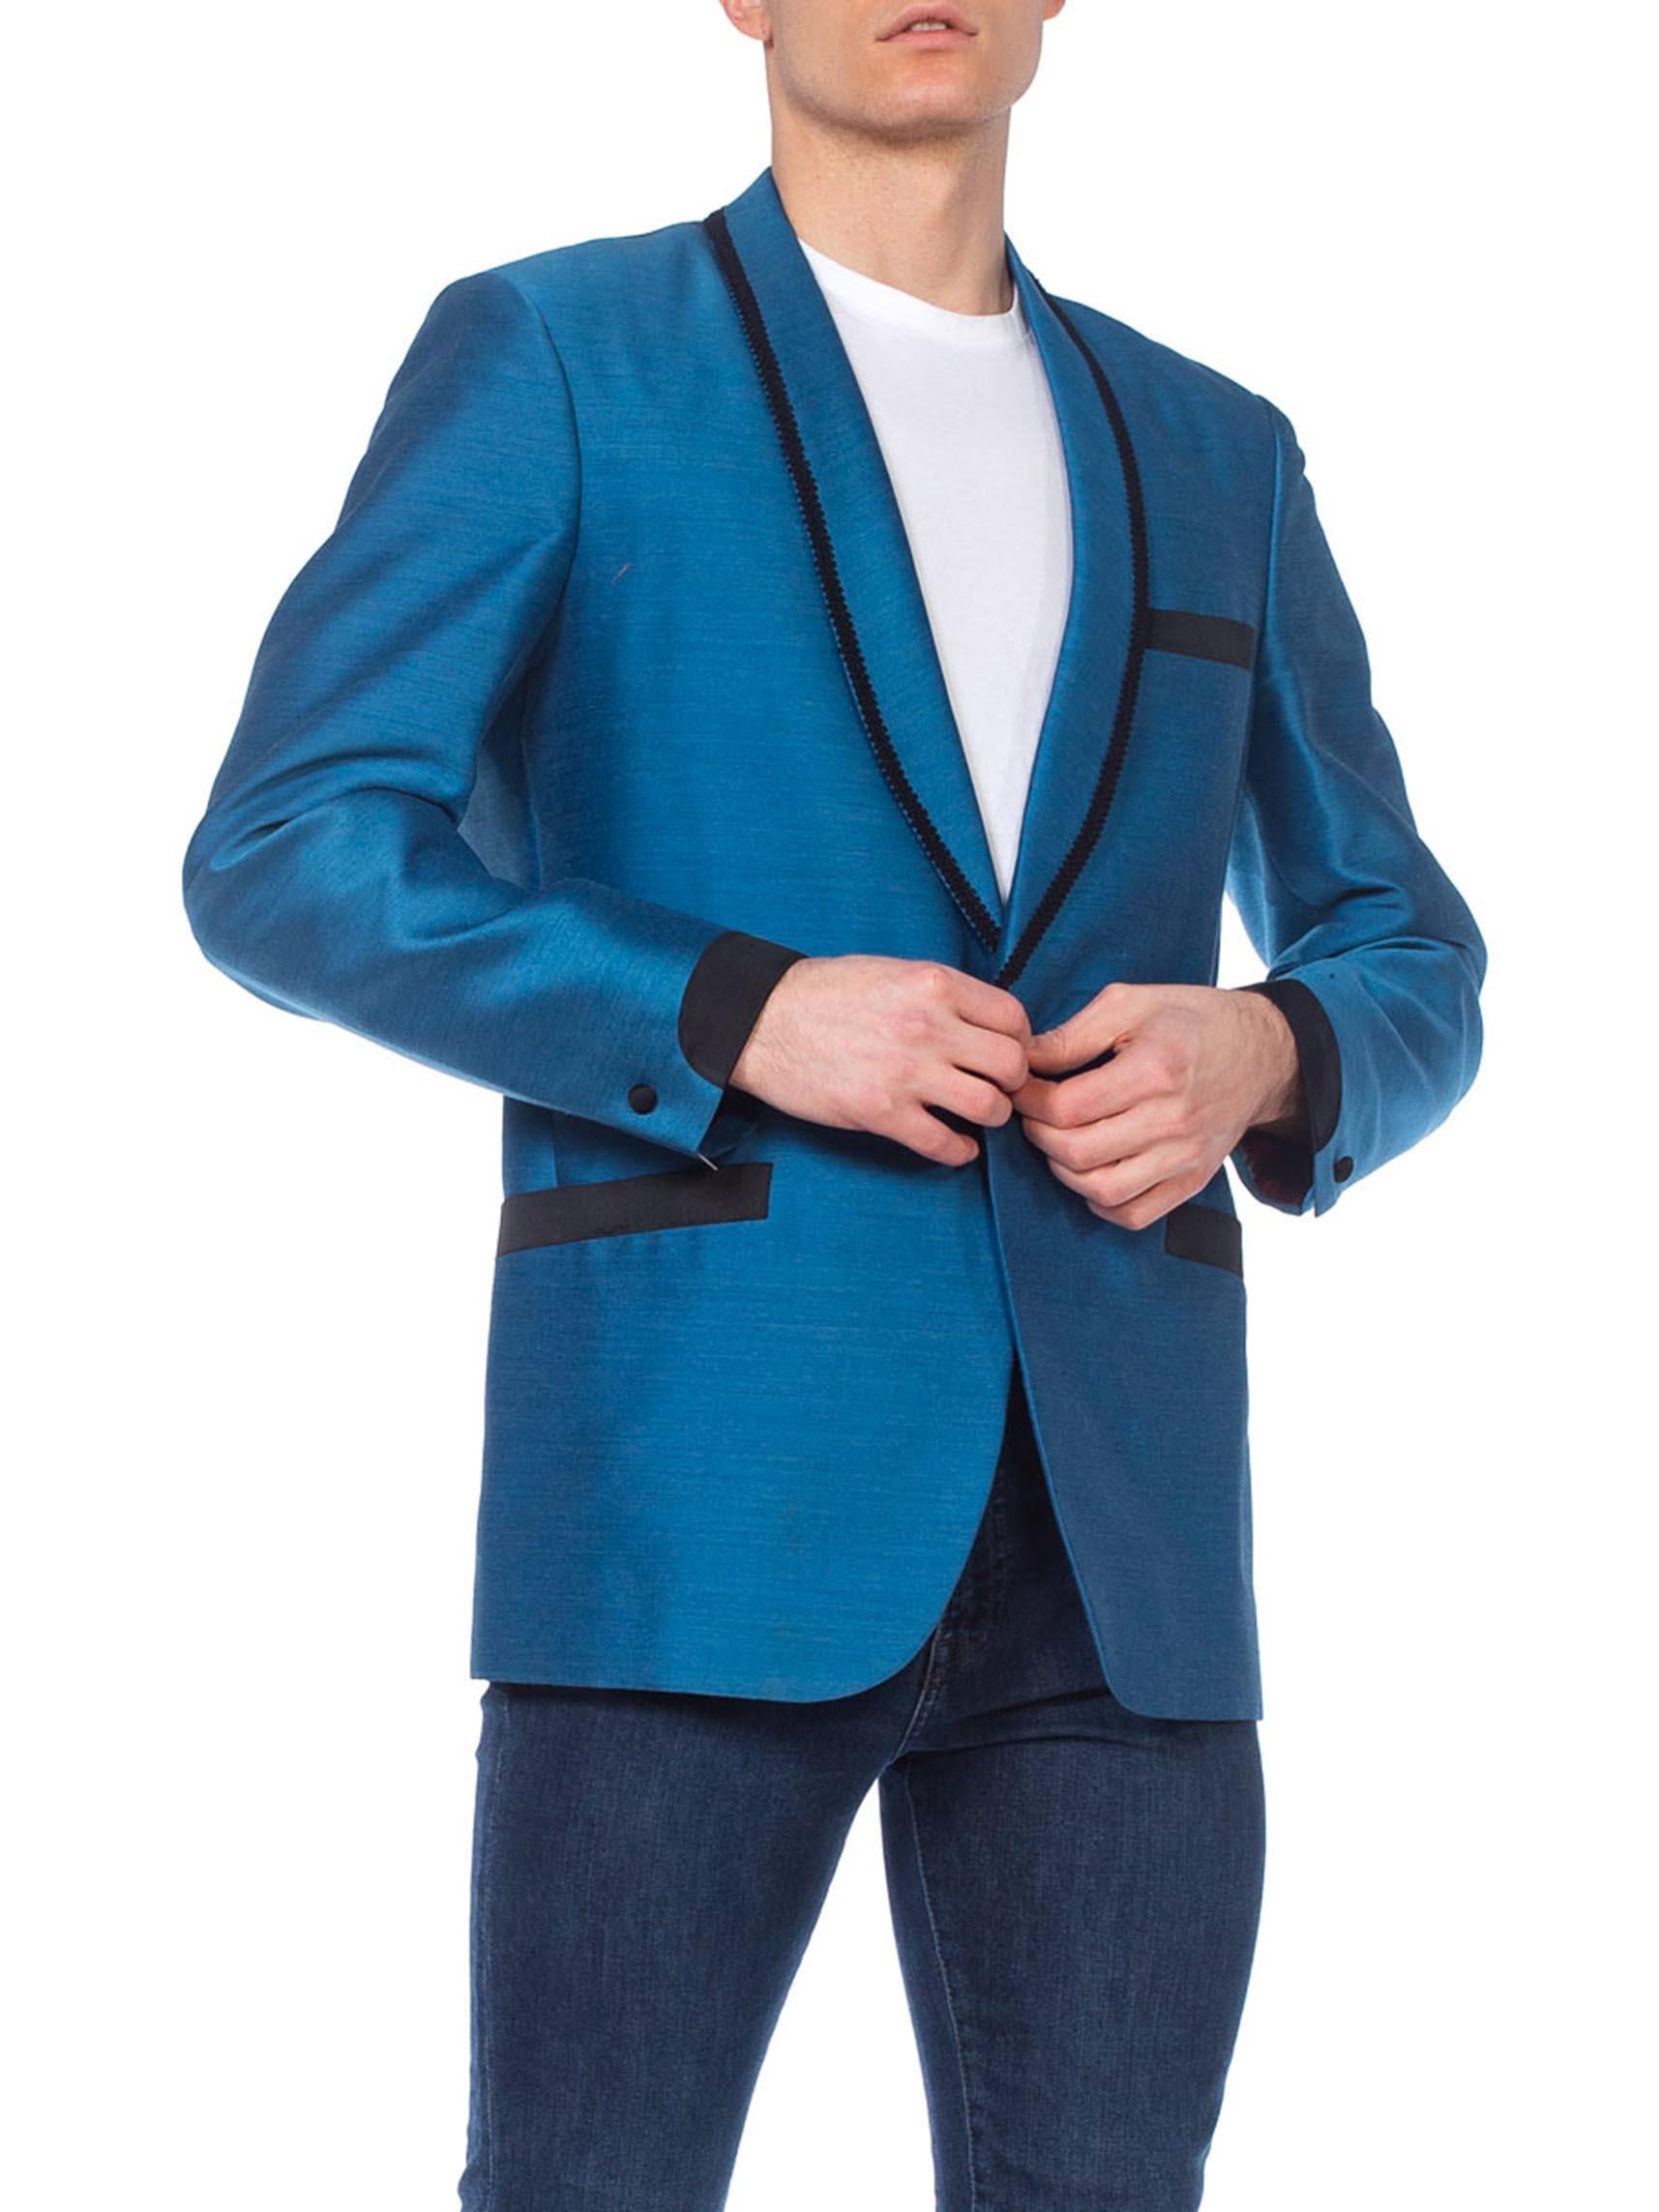 Men's Mens 1950's 1960's Rat Pack YSL Style Shark Skin Blue Tuxedo Jacket